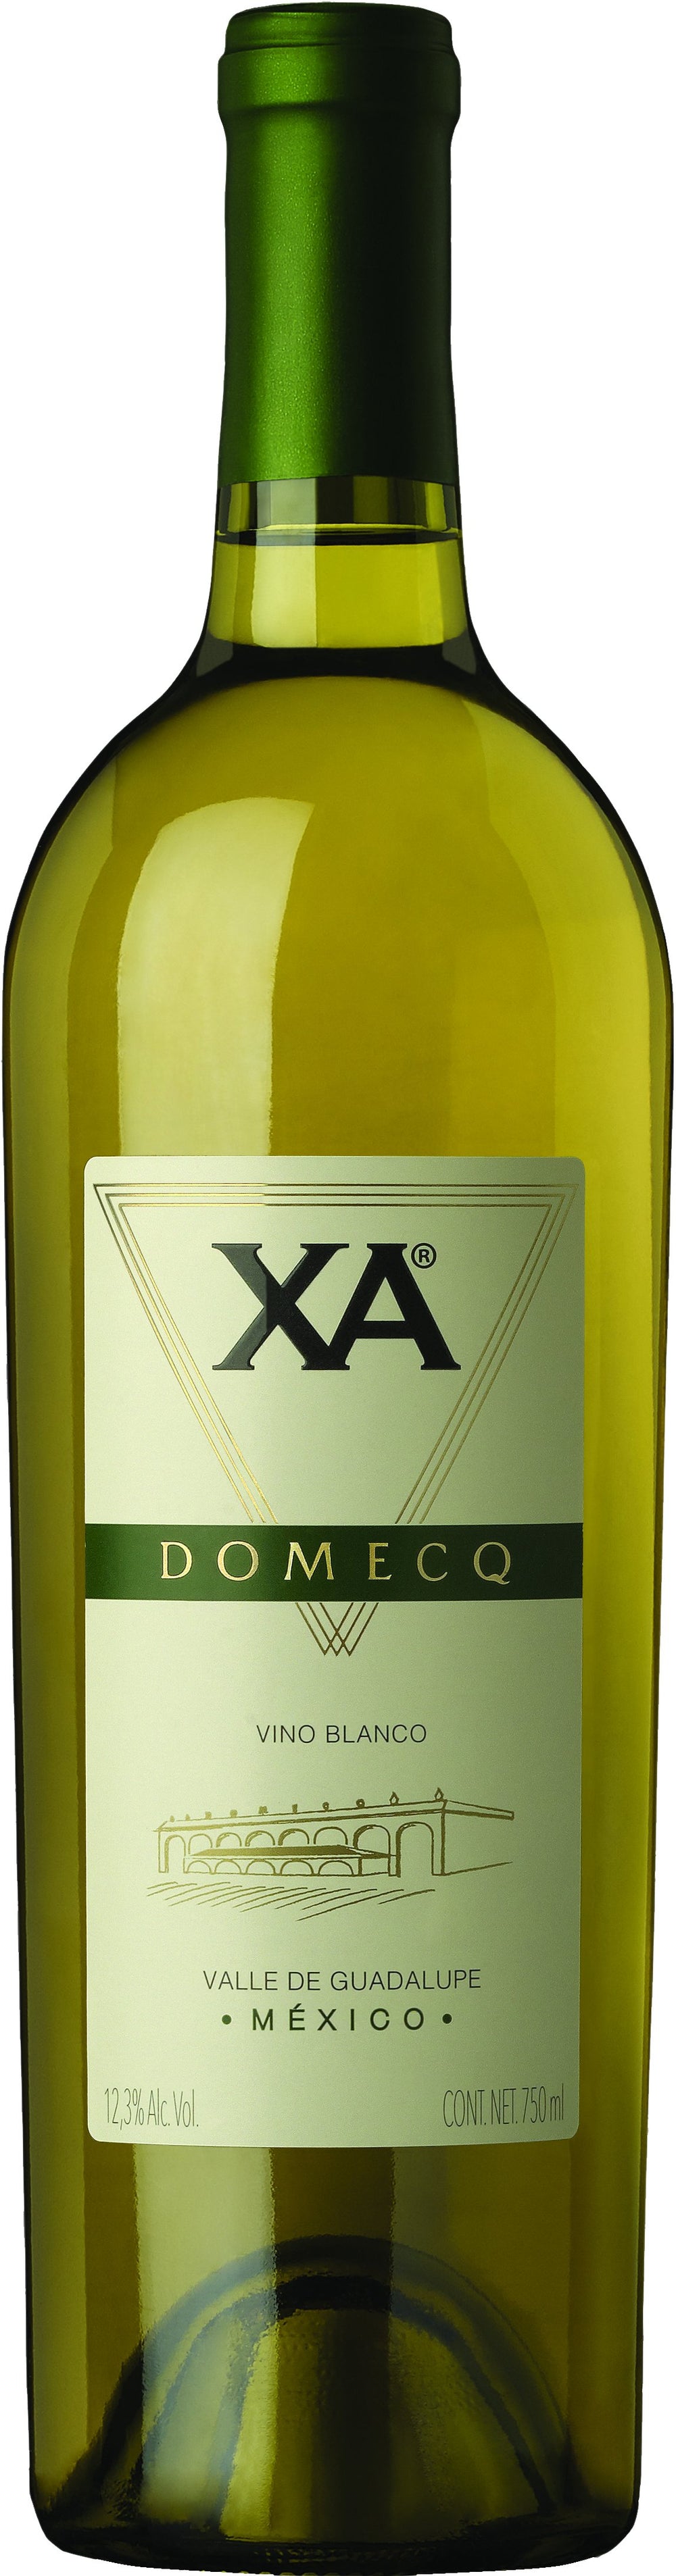 Vino Blanco Chateau Domecq XA Blanc de Blancs 750 ml